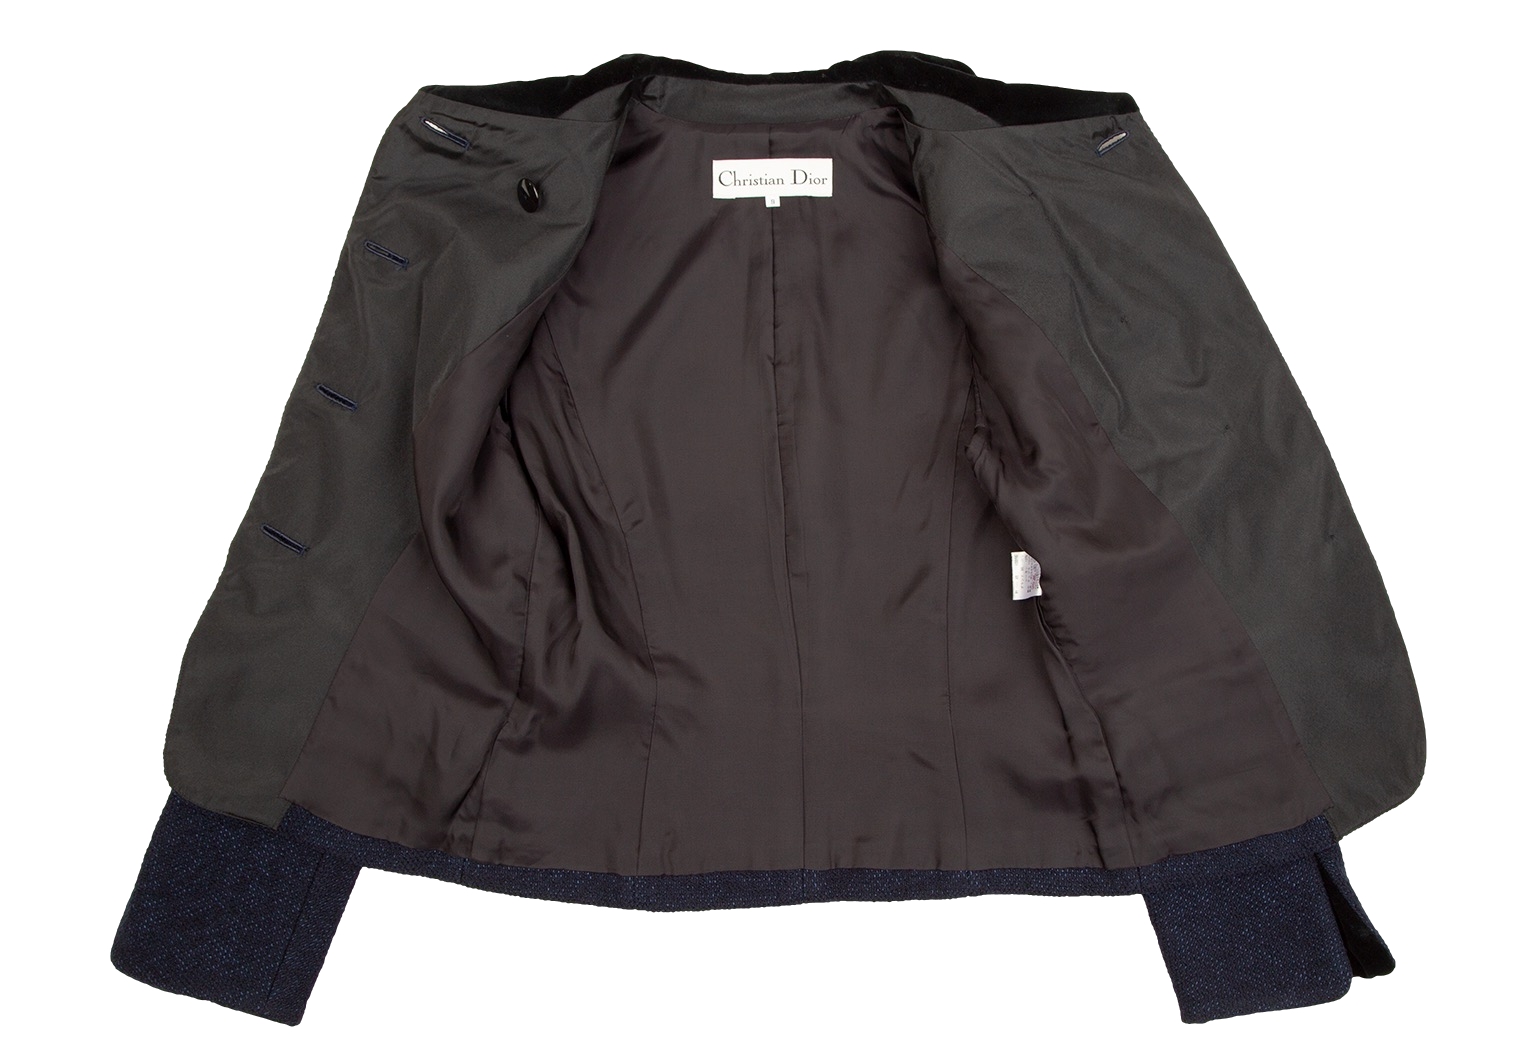 期間特売 M281/Christian Dior ツイード スポーツジャケット 緑 秋冬